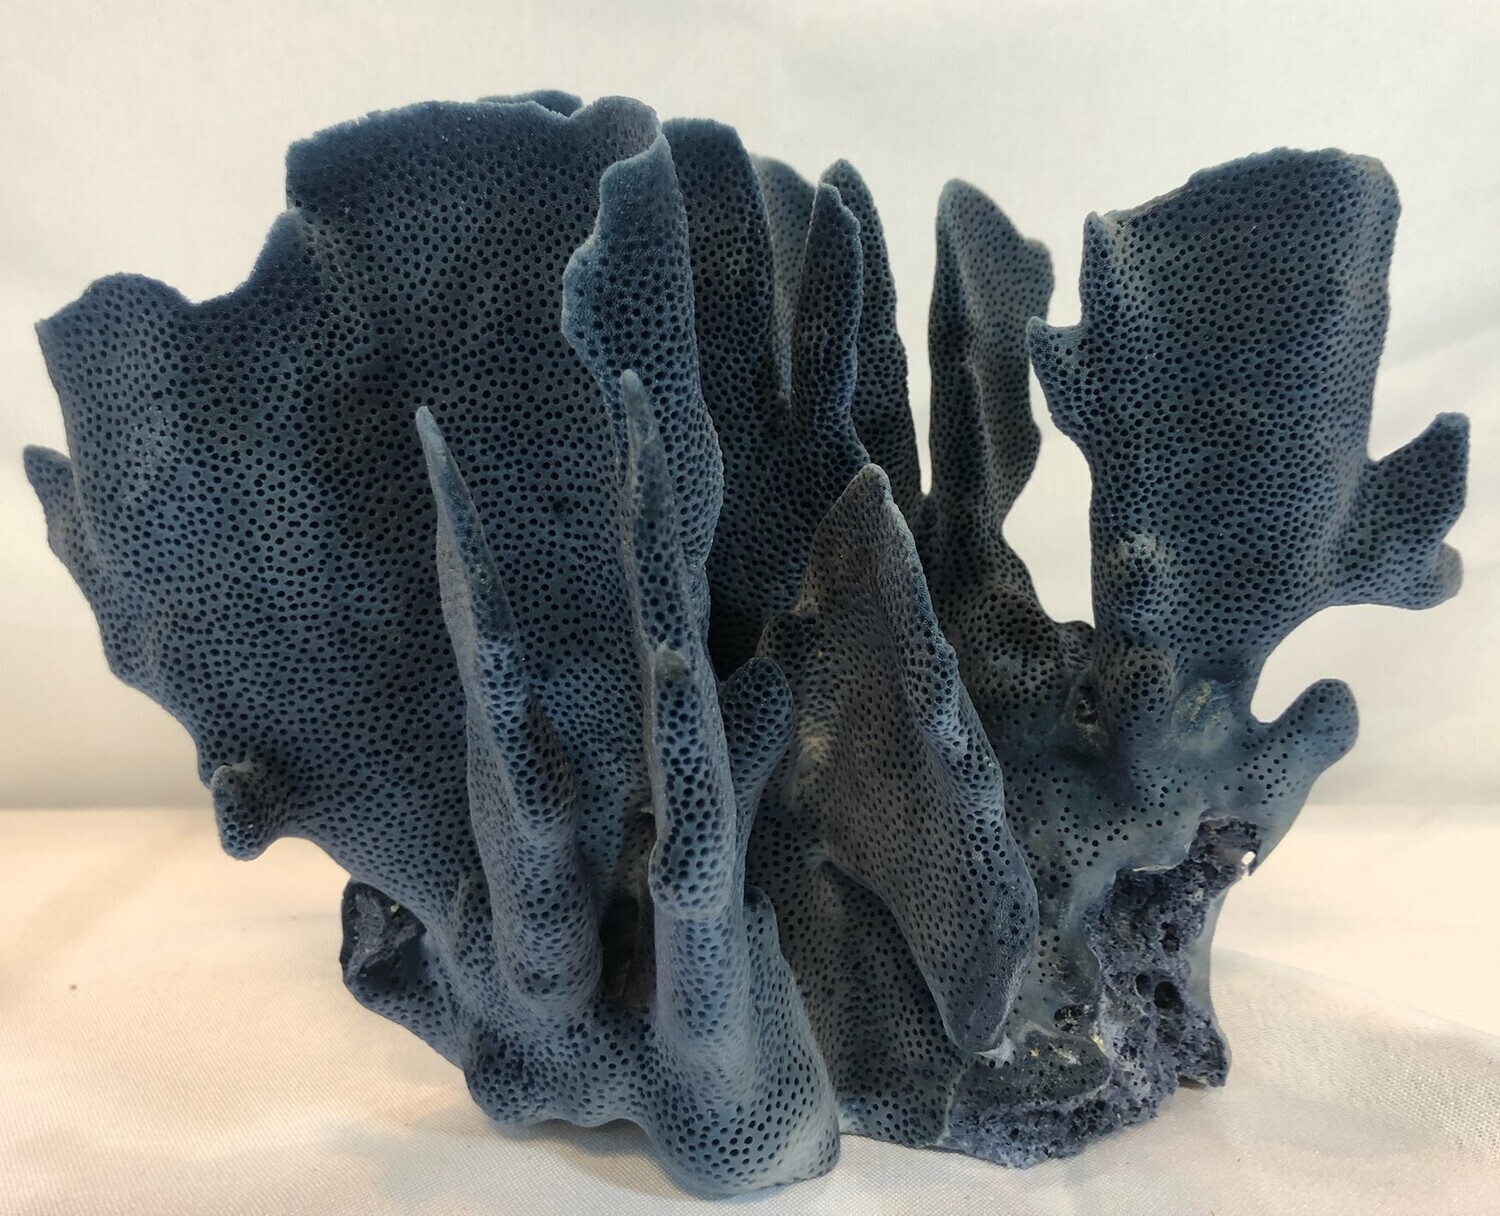 Blue Coral Specimen 7-10